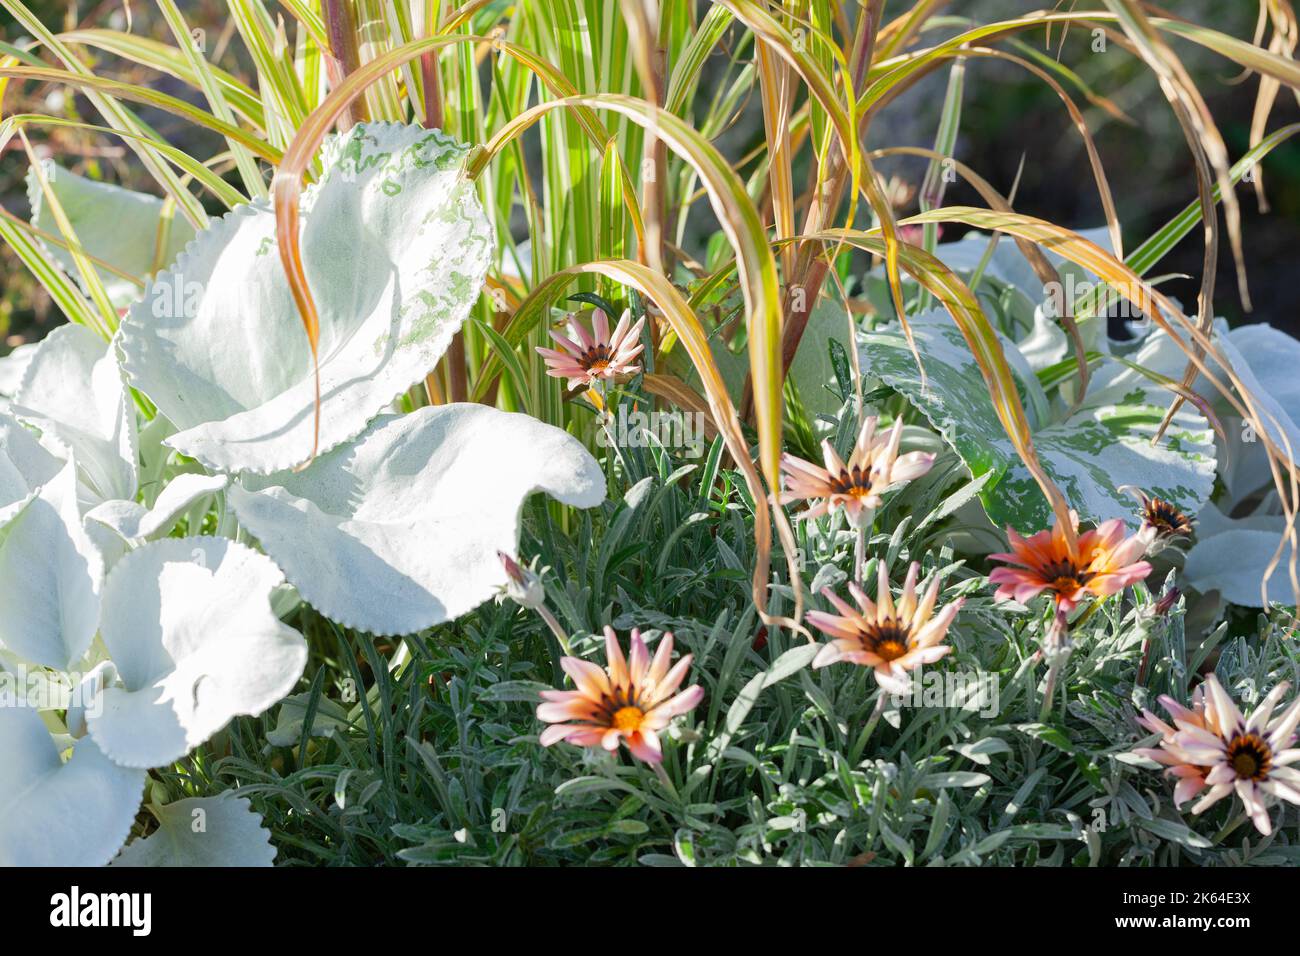 Garden Designs - Nahaufnahme einer Vielzahl von schönen Containerpflanzen, die in einem Essex Garden wachsen. Stockfoto